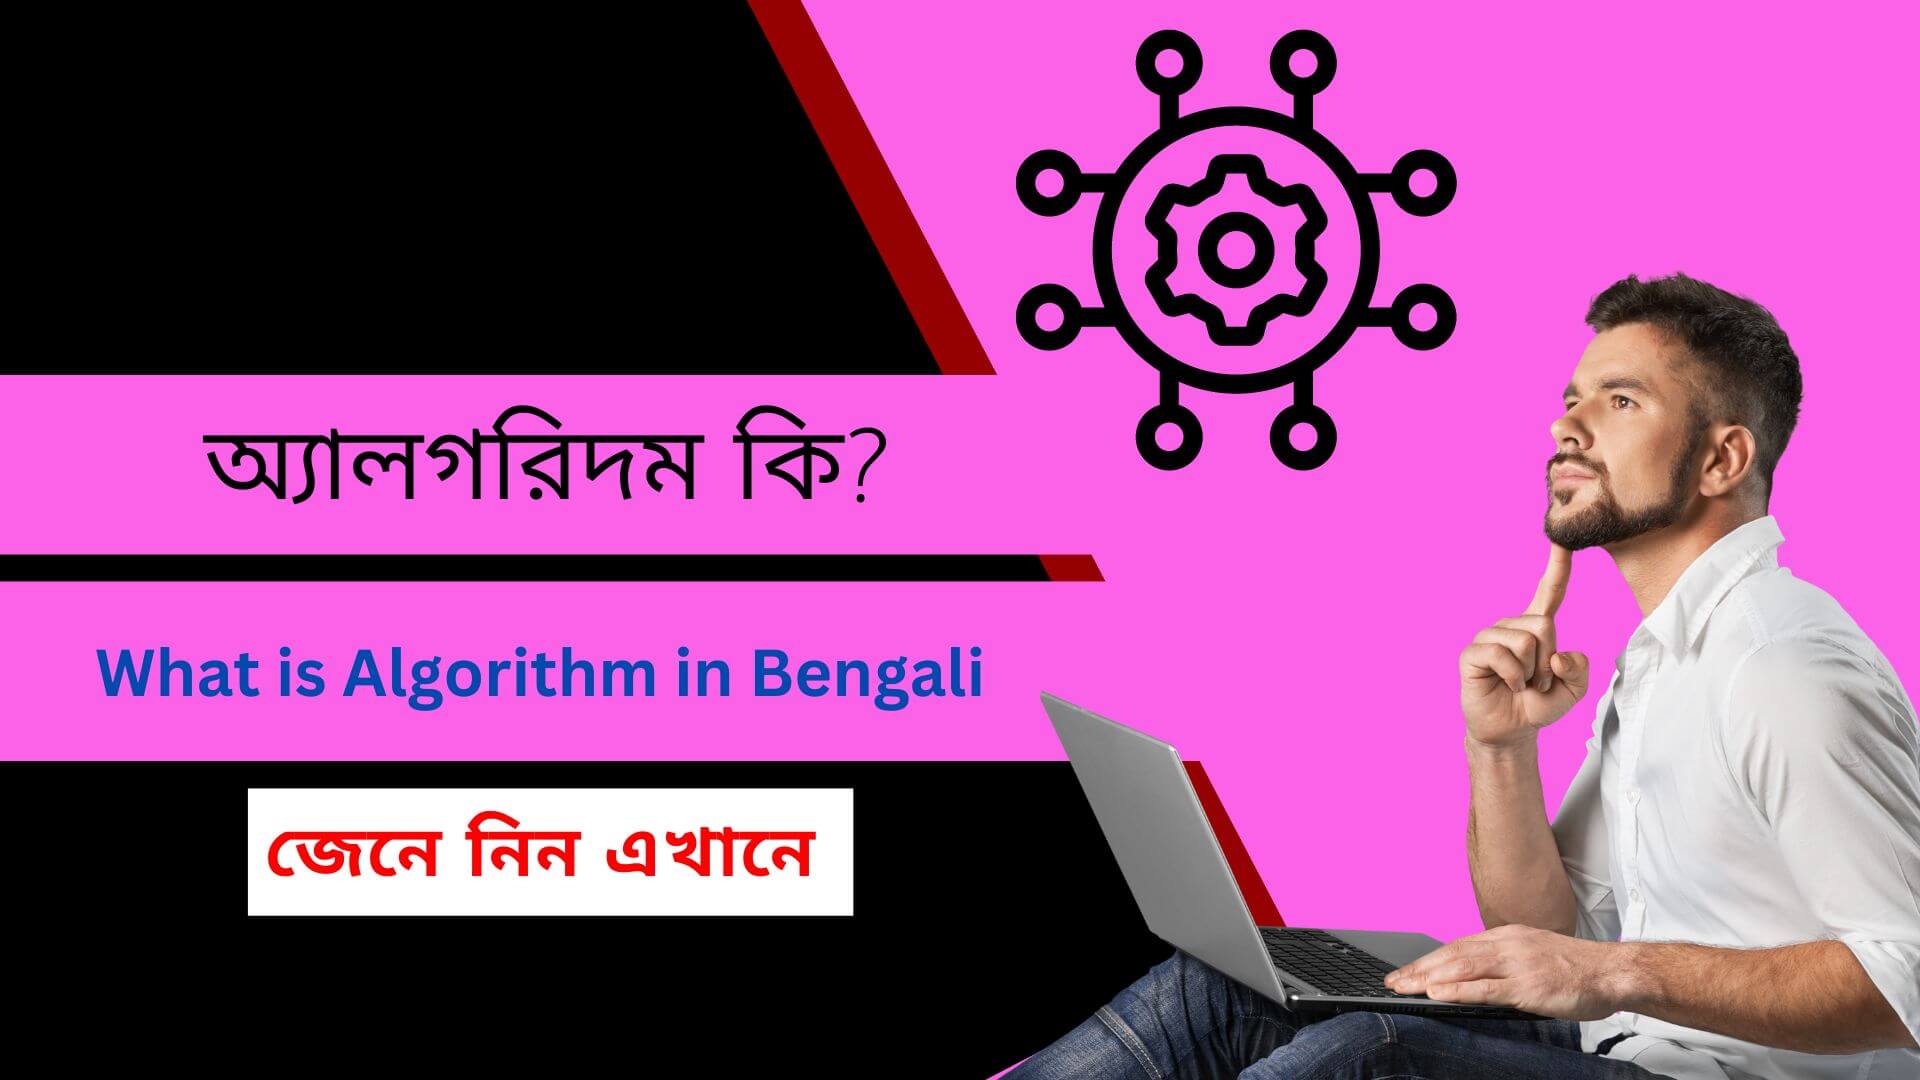 অ্যালগরিদম কি ? What is Algorithm in Bengali